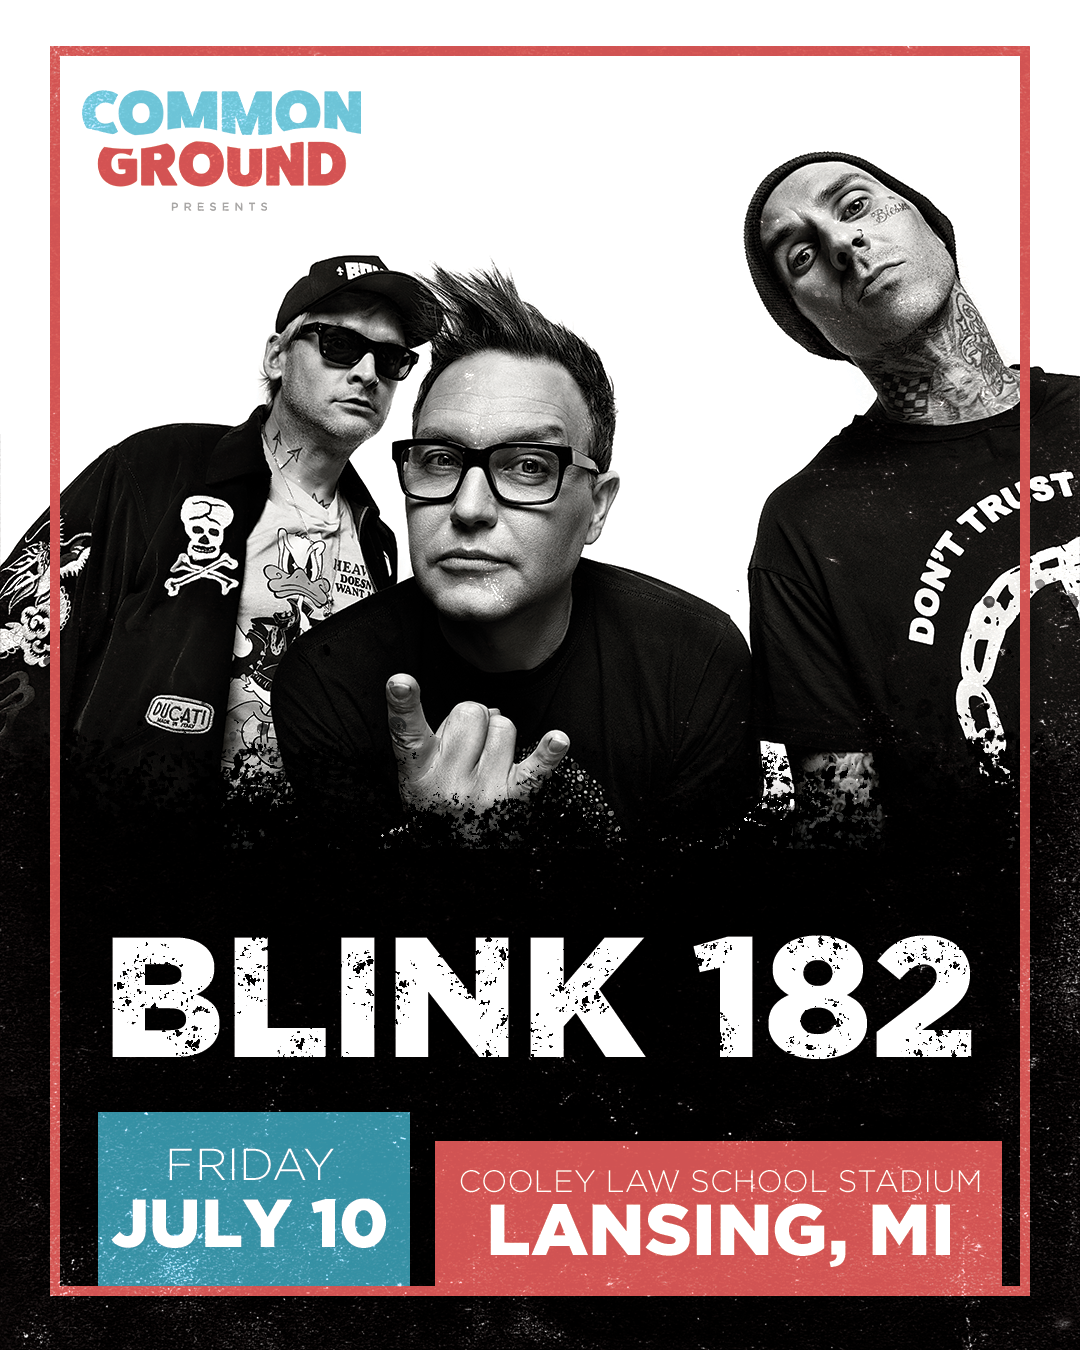 Blink 182 is coming to Lansing